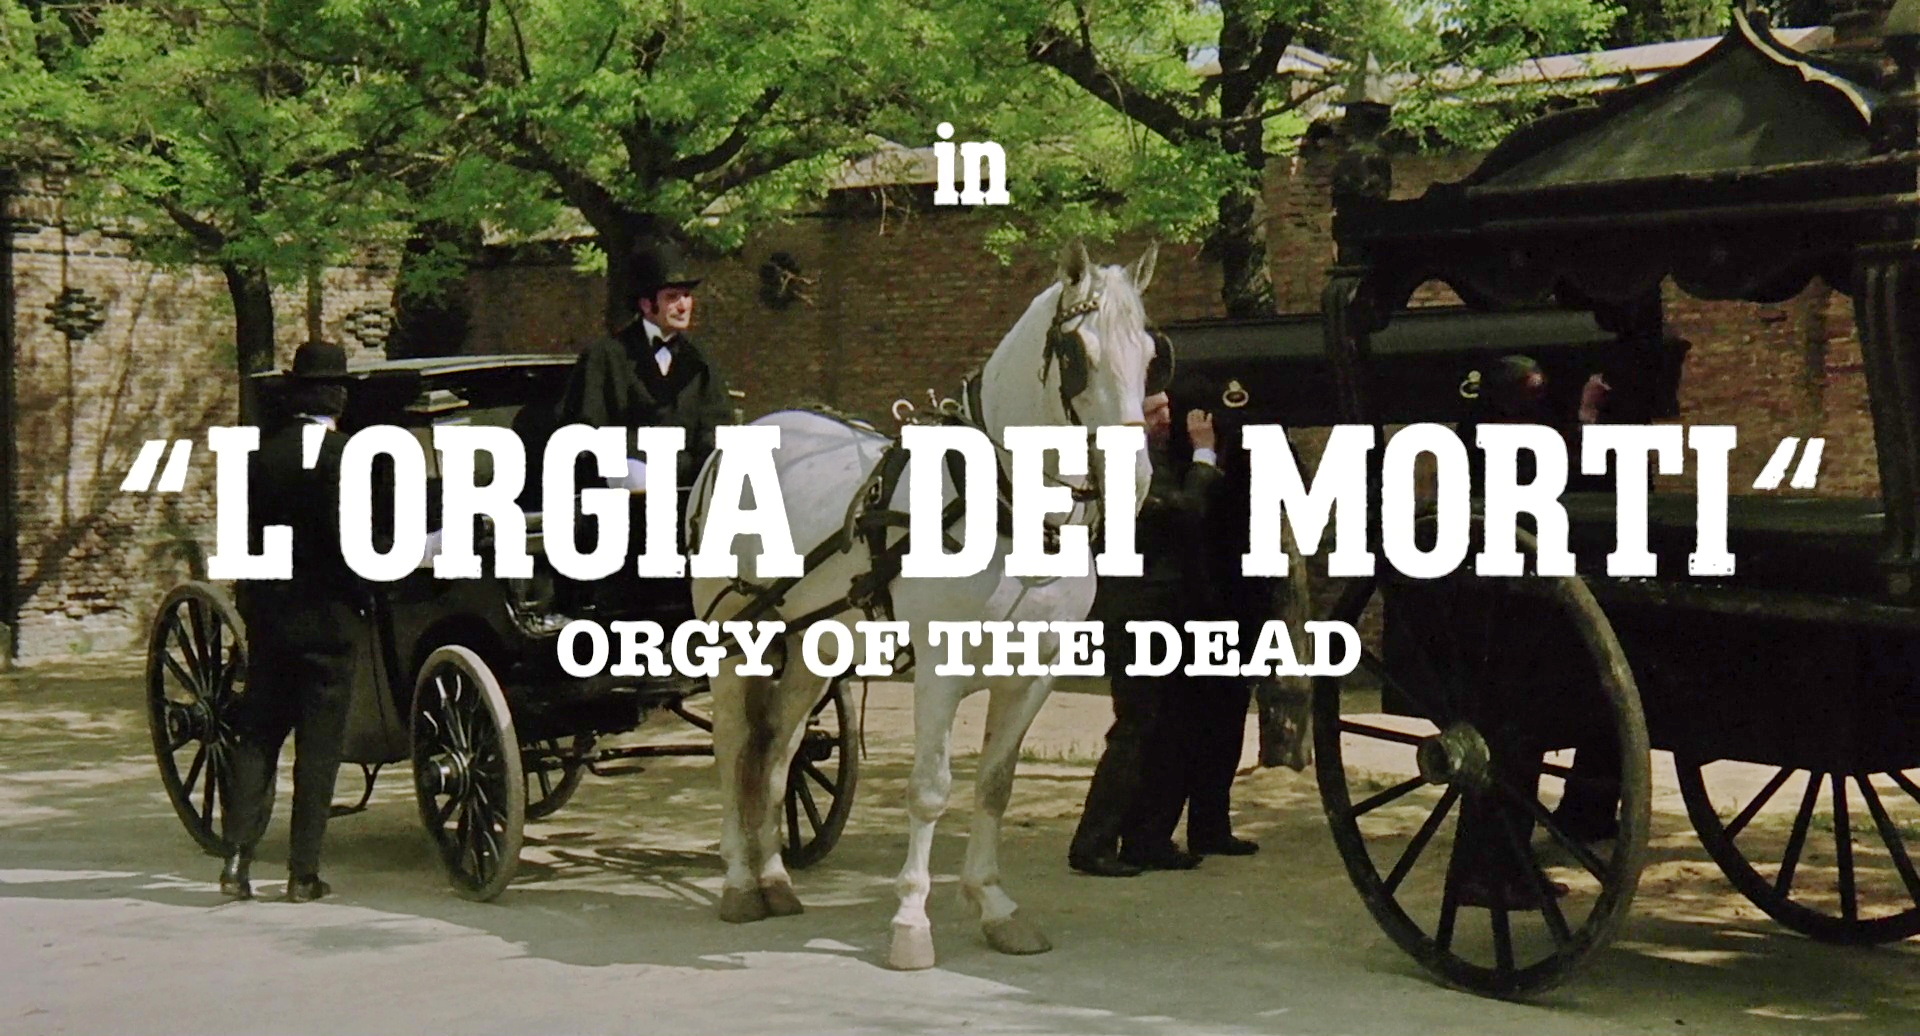 La orgía de los muertos, 1973 title.jpg